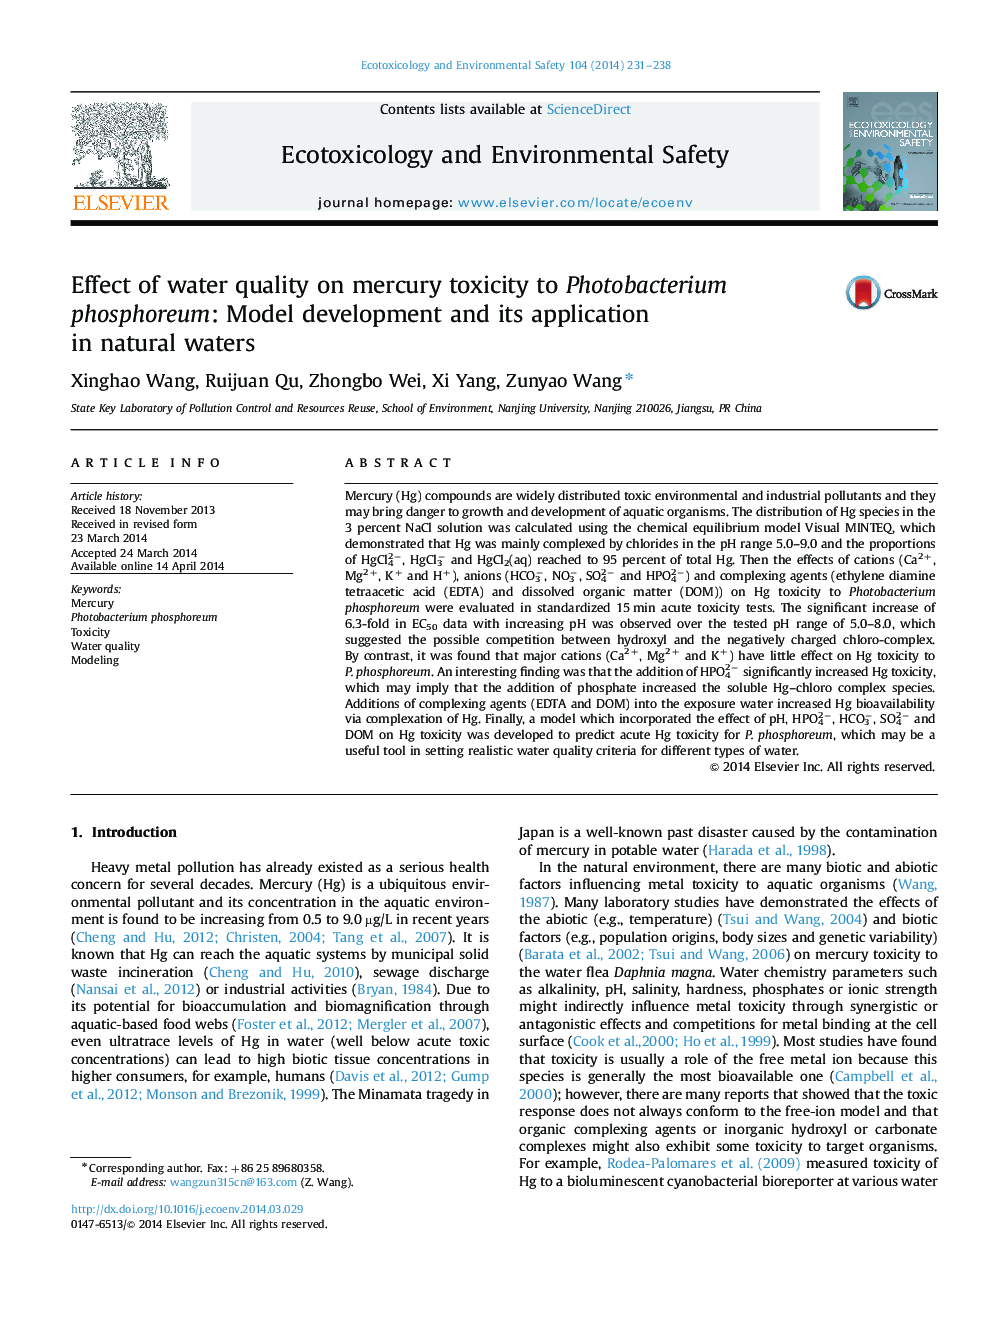 اثر کیفیت آب بر سمیت جیوه به فتوباکتریوم فسفورم: توسعه مدل و کاربرد آن در آبهای طبیعی 